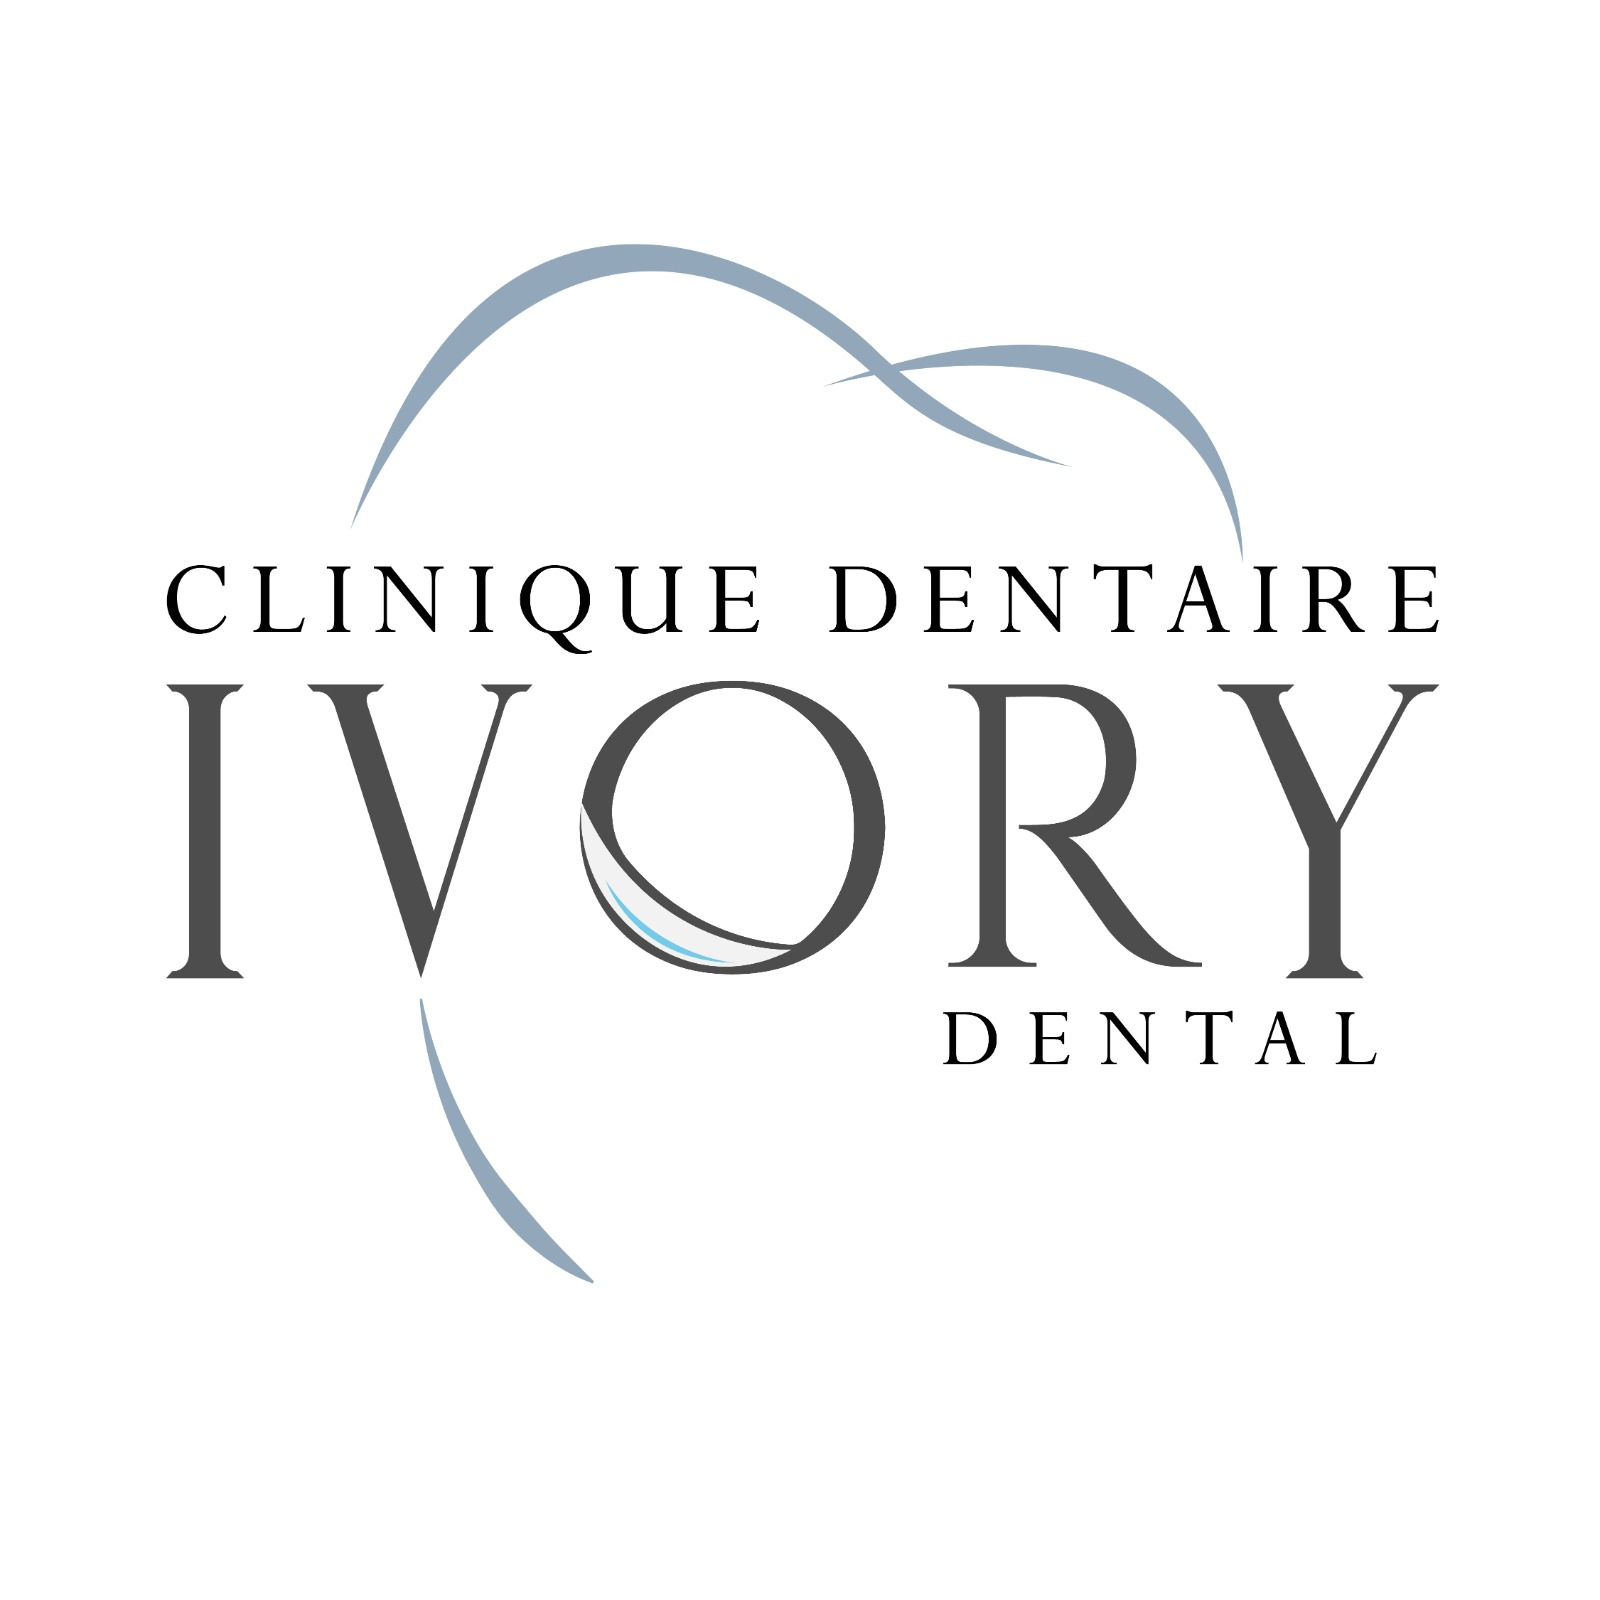 Ivory dental logo